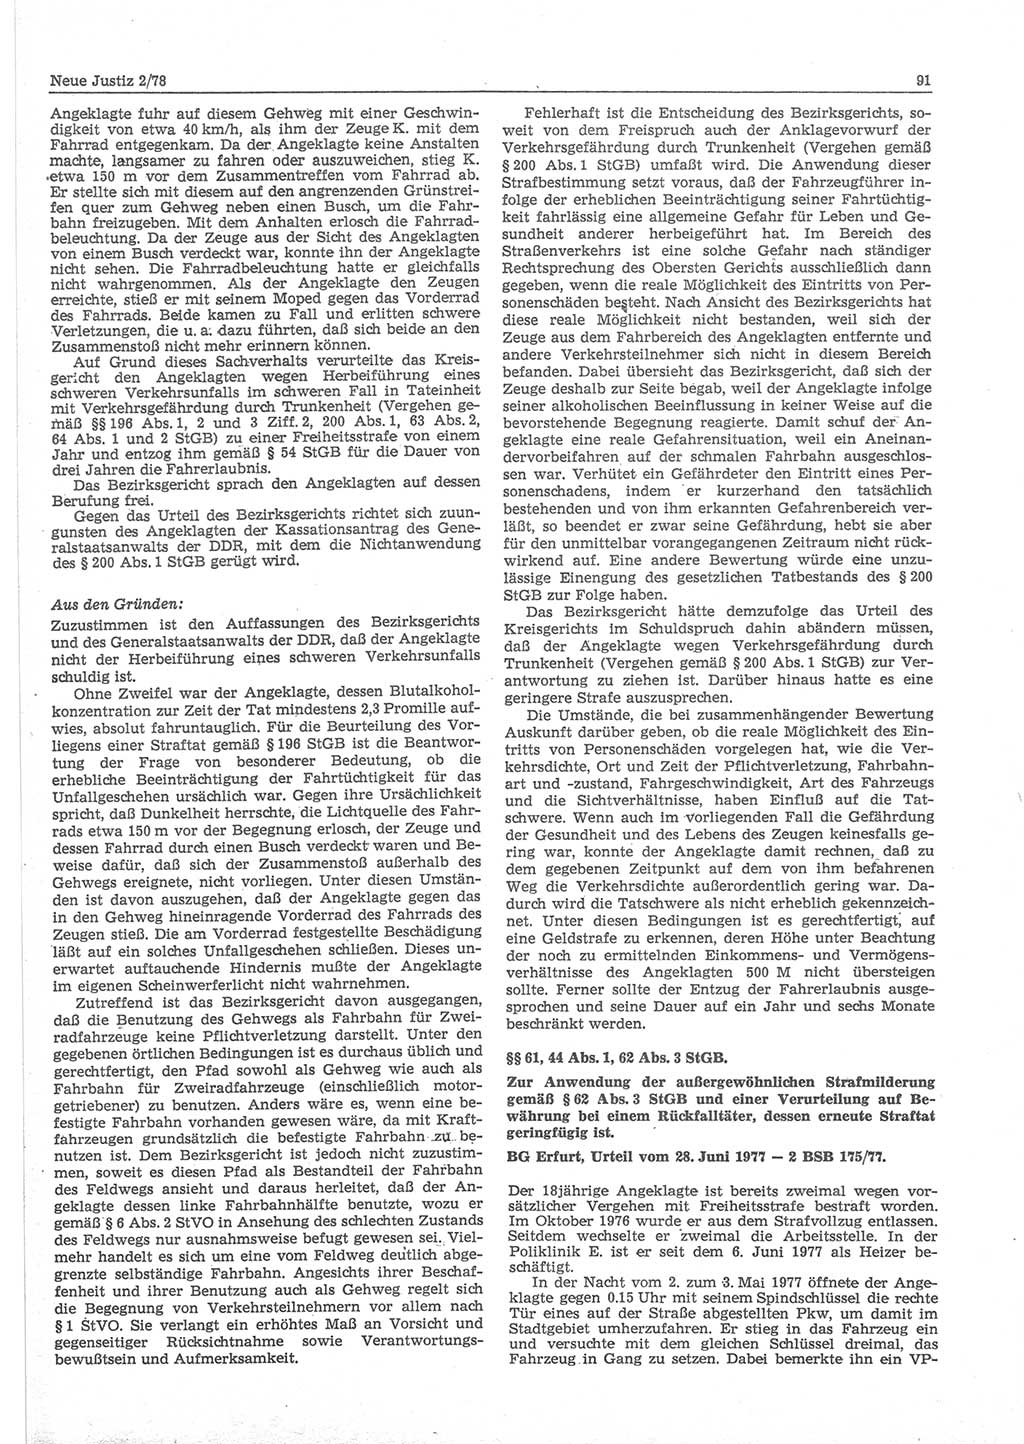 Neue Justiz (NJ), Zeitschrift für sozialistisches Recht und Gesetzlichkeit [Deutsche Demokratische Republik (DDR)], 32. Jahrgang 1978, Seite 91 (NJ DDR 1978, S. 91)